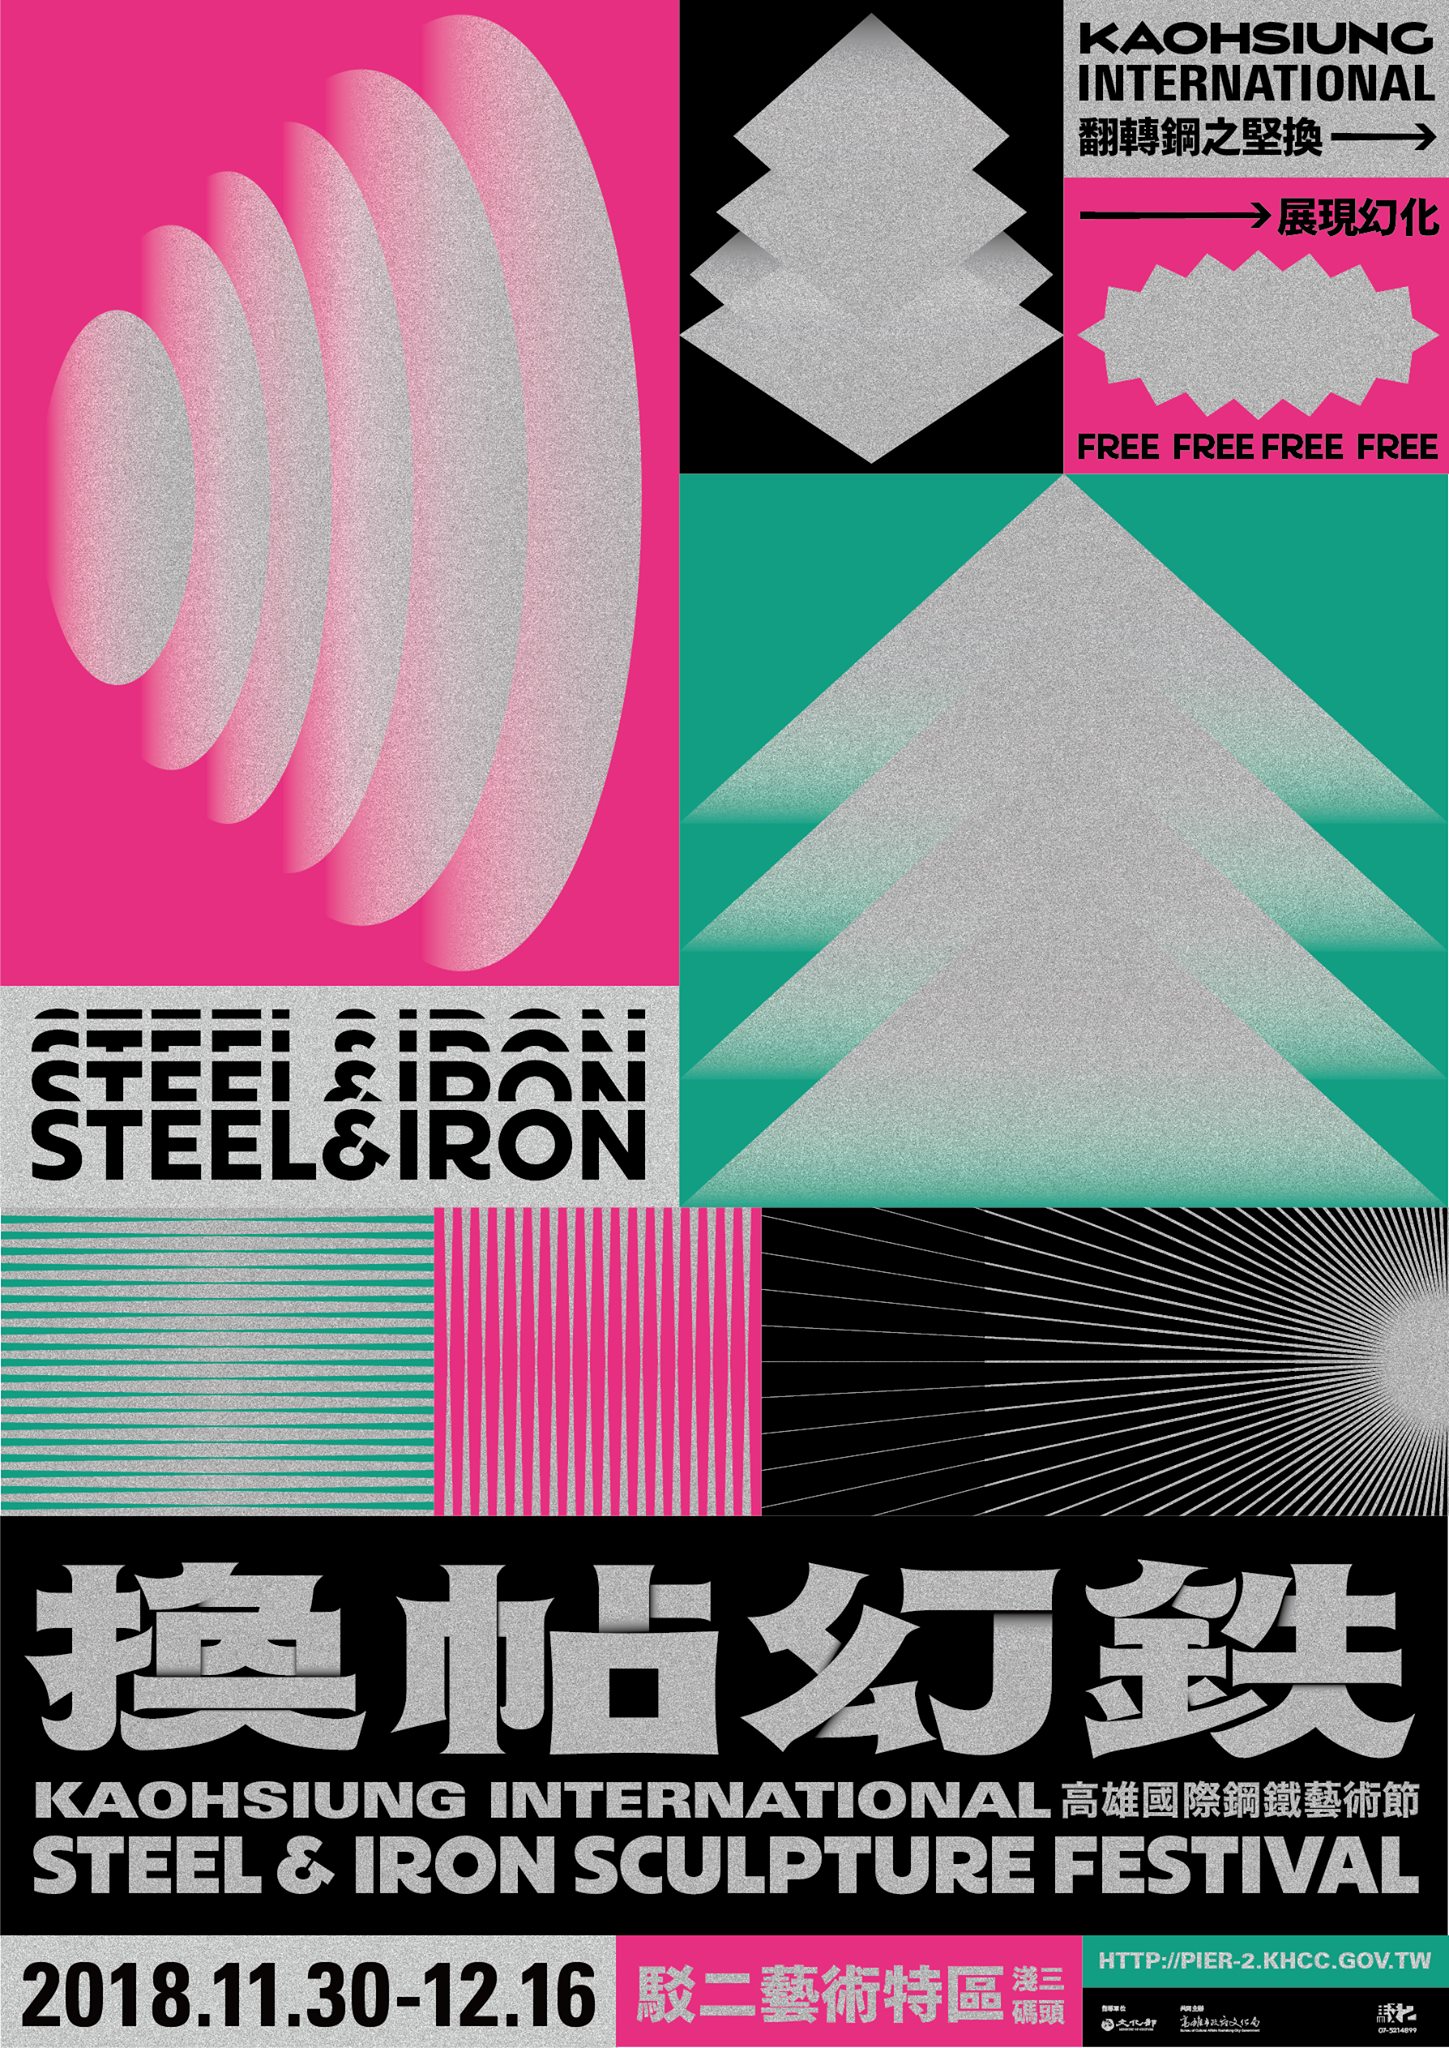 换帖幻铁-高雄国际钢铁艺术节海报设计